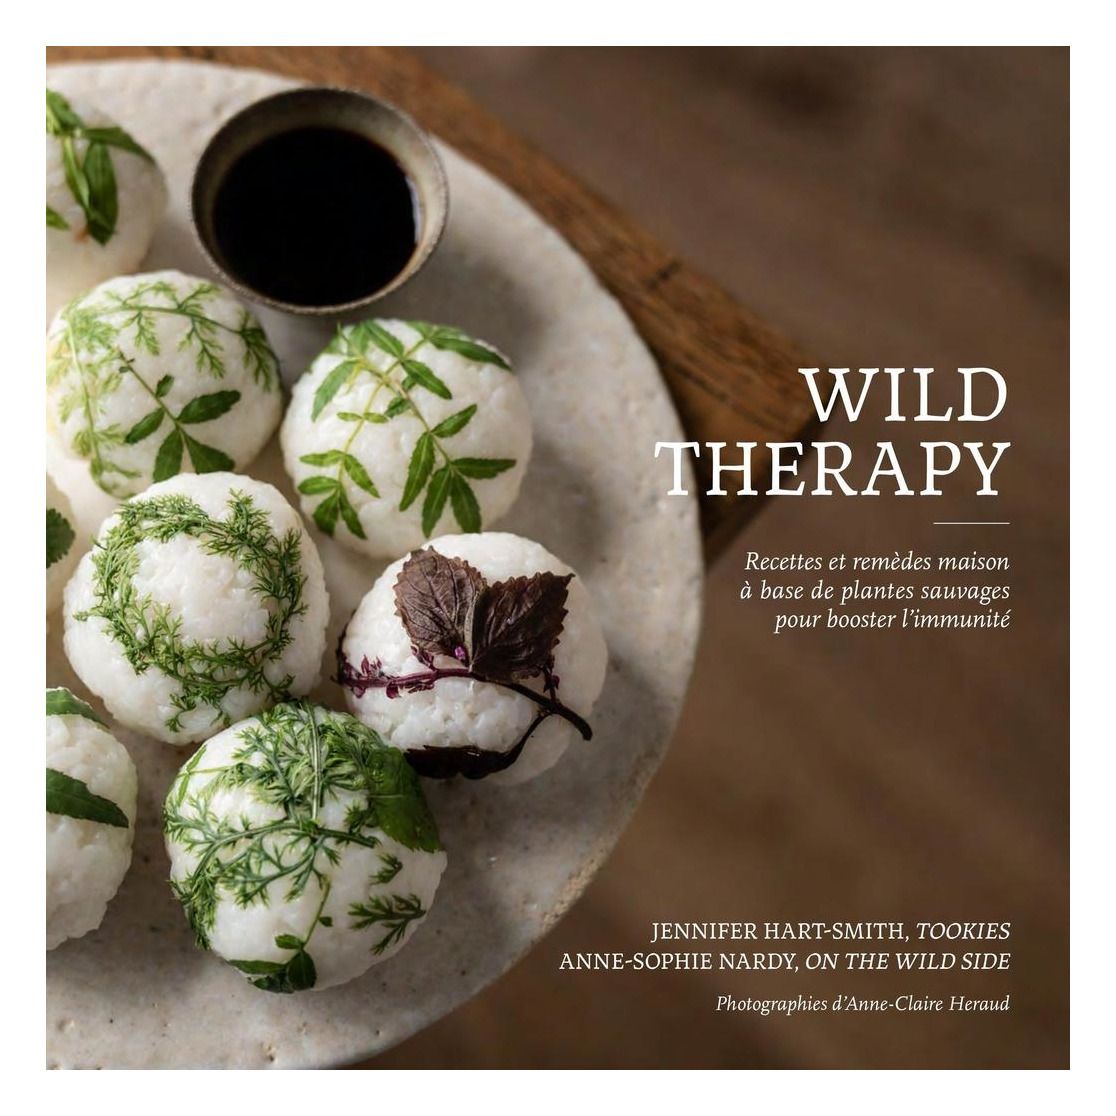 On The Wild Side - Livre Wild Therapy, recettes et remèdes maison à base de plantes sauvages - FR - 